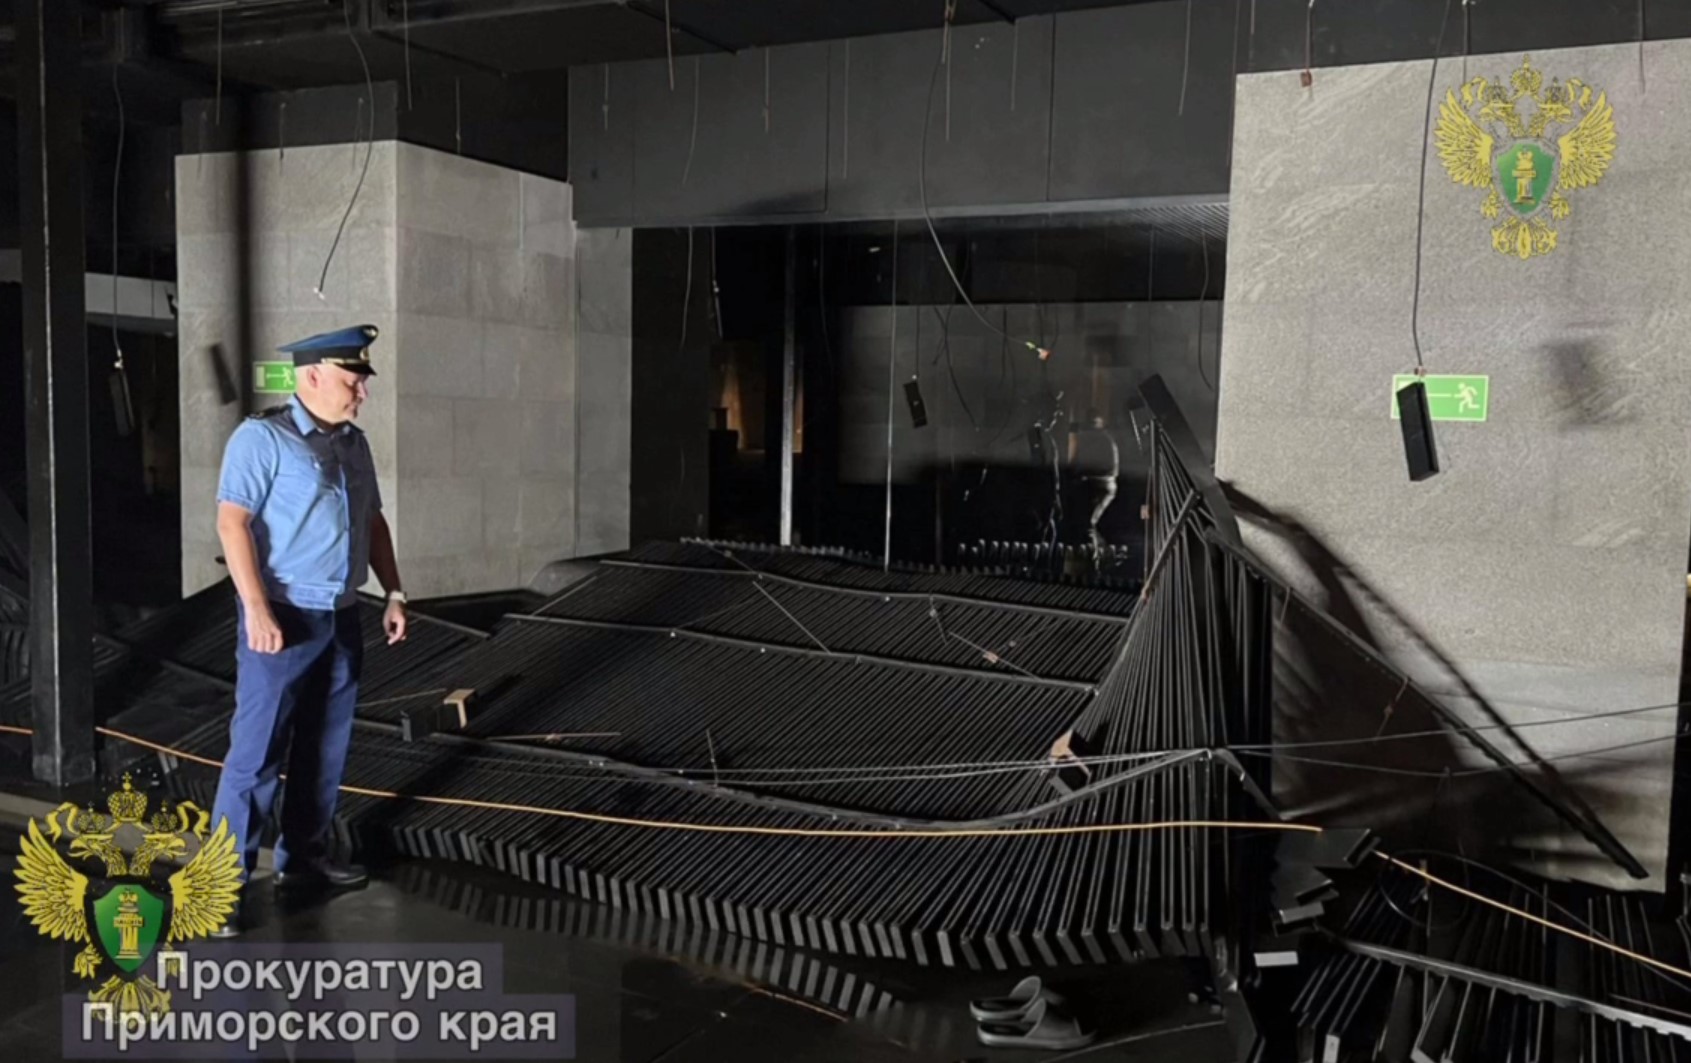 Потолок обрушился на людей в популярном банном комплексе во Владивостоке